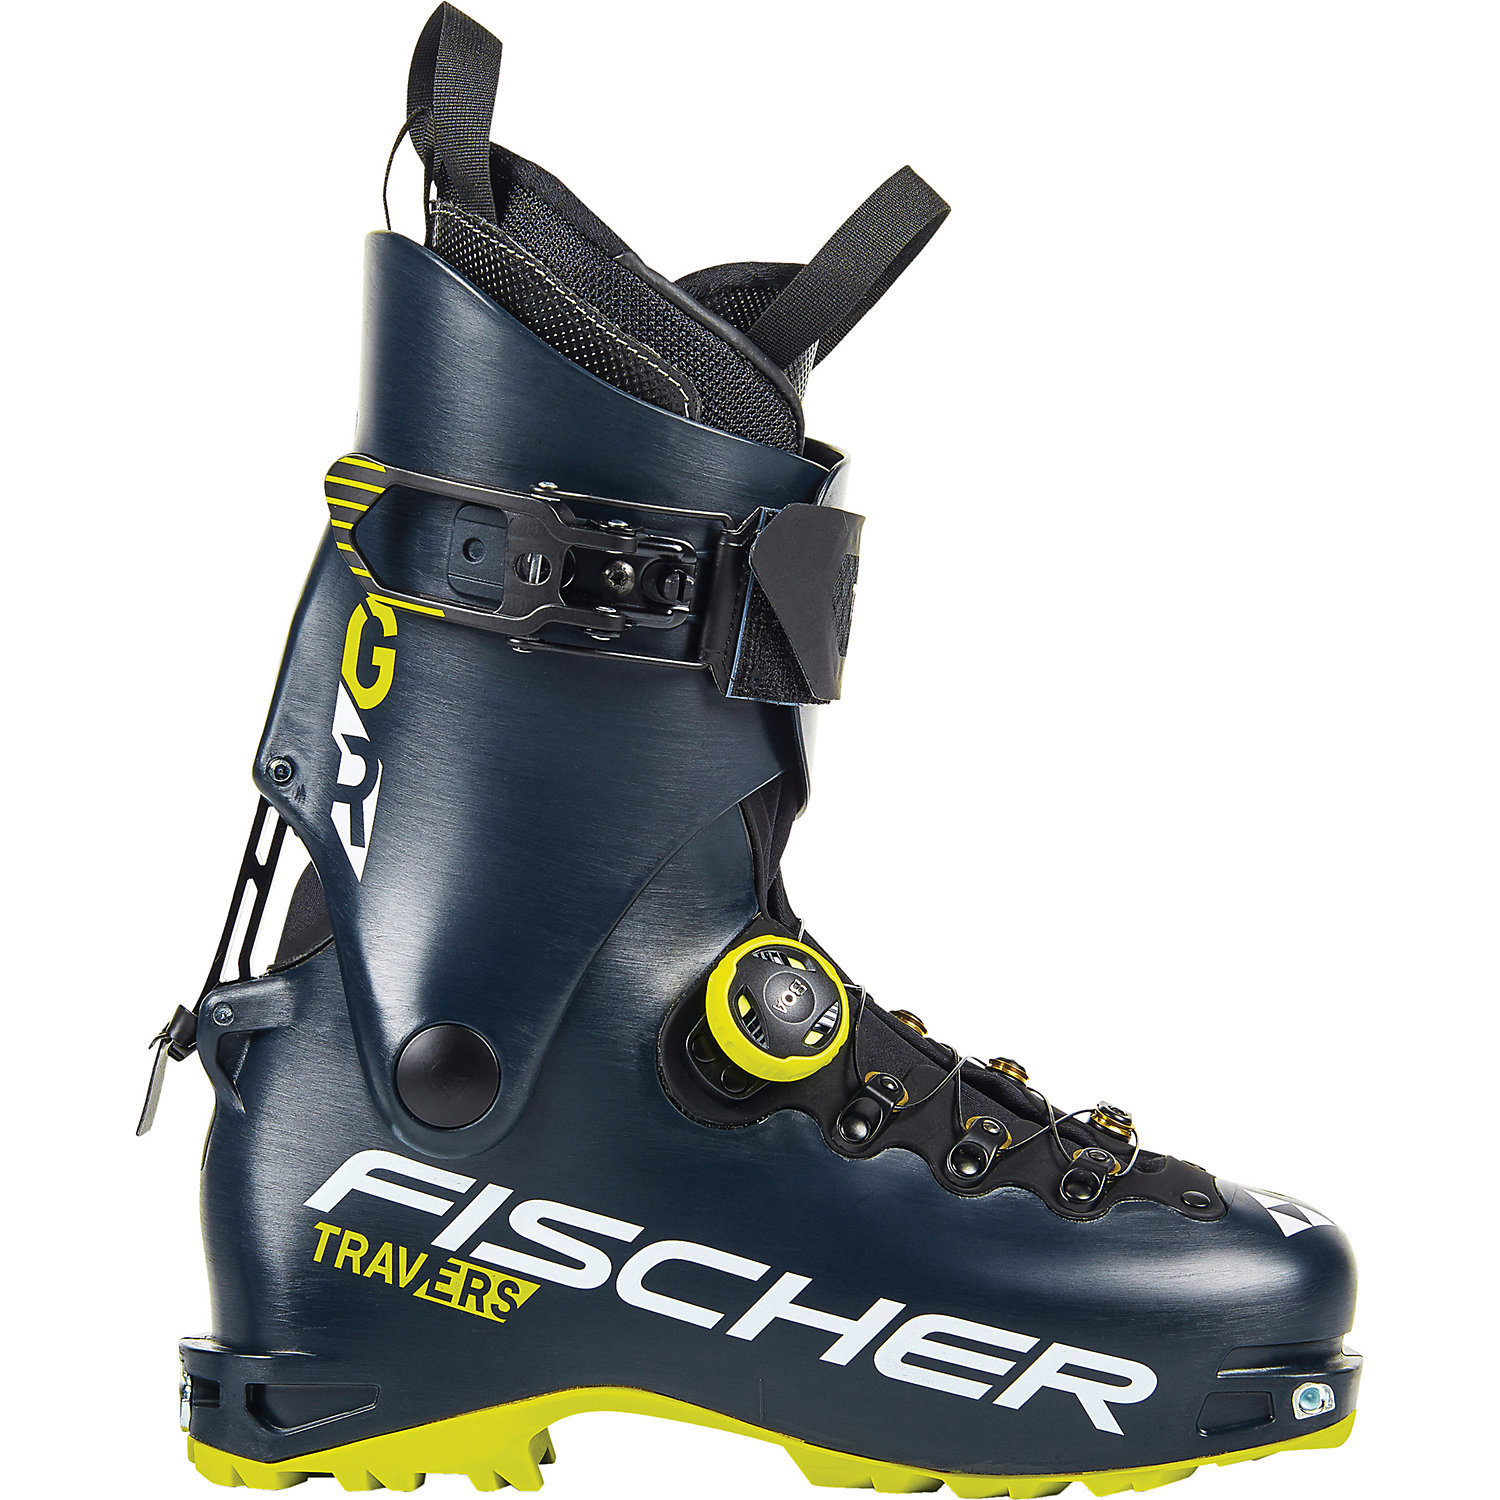 Fischer Travers GR Ski Boot